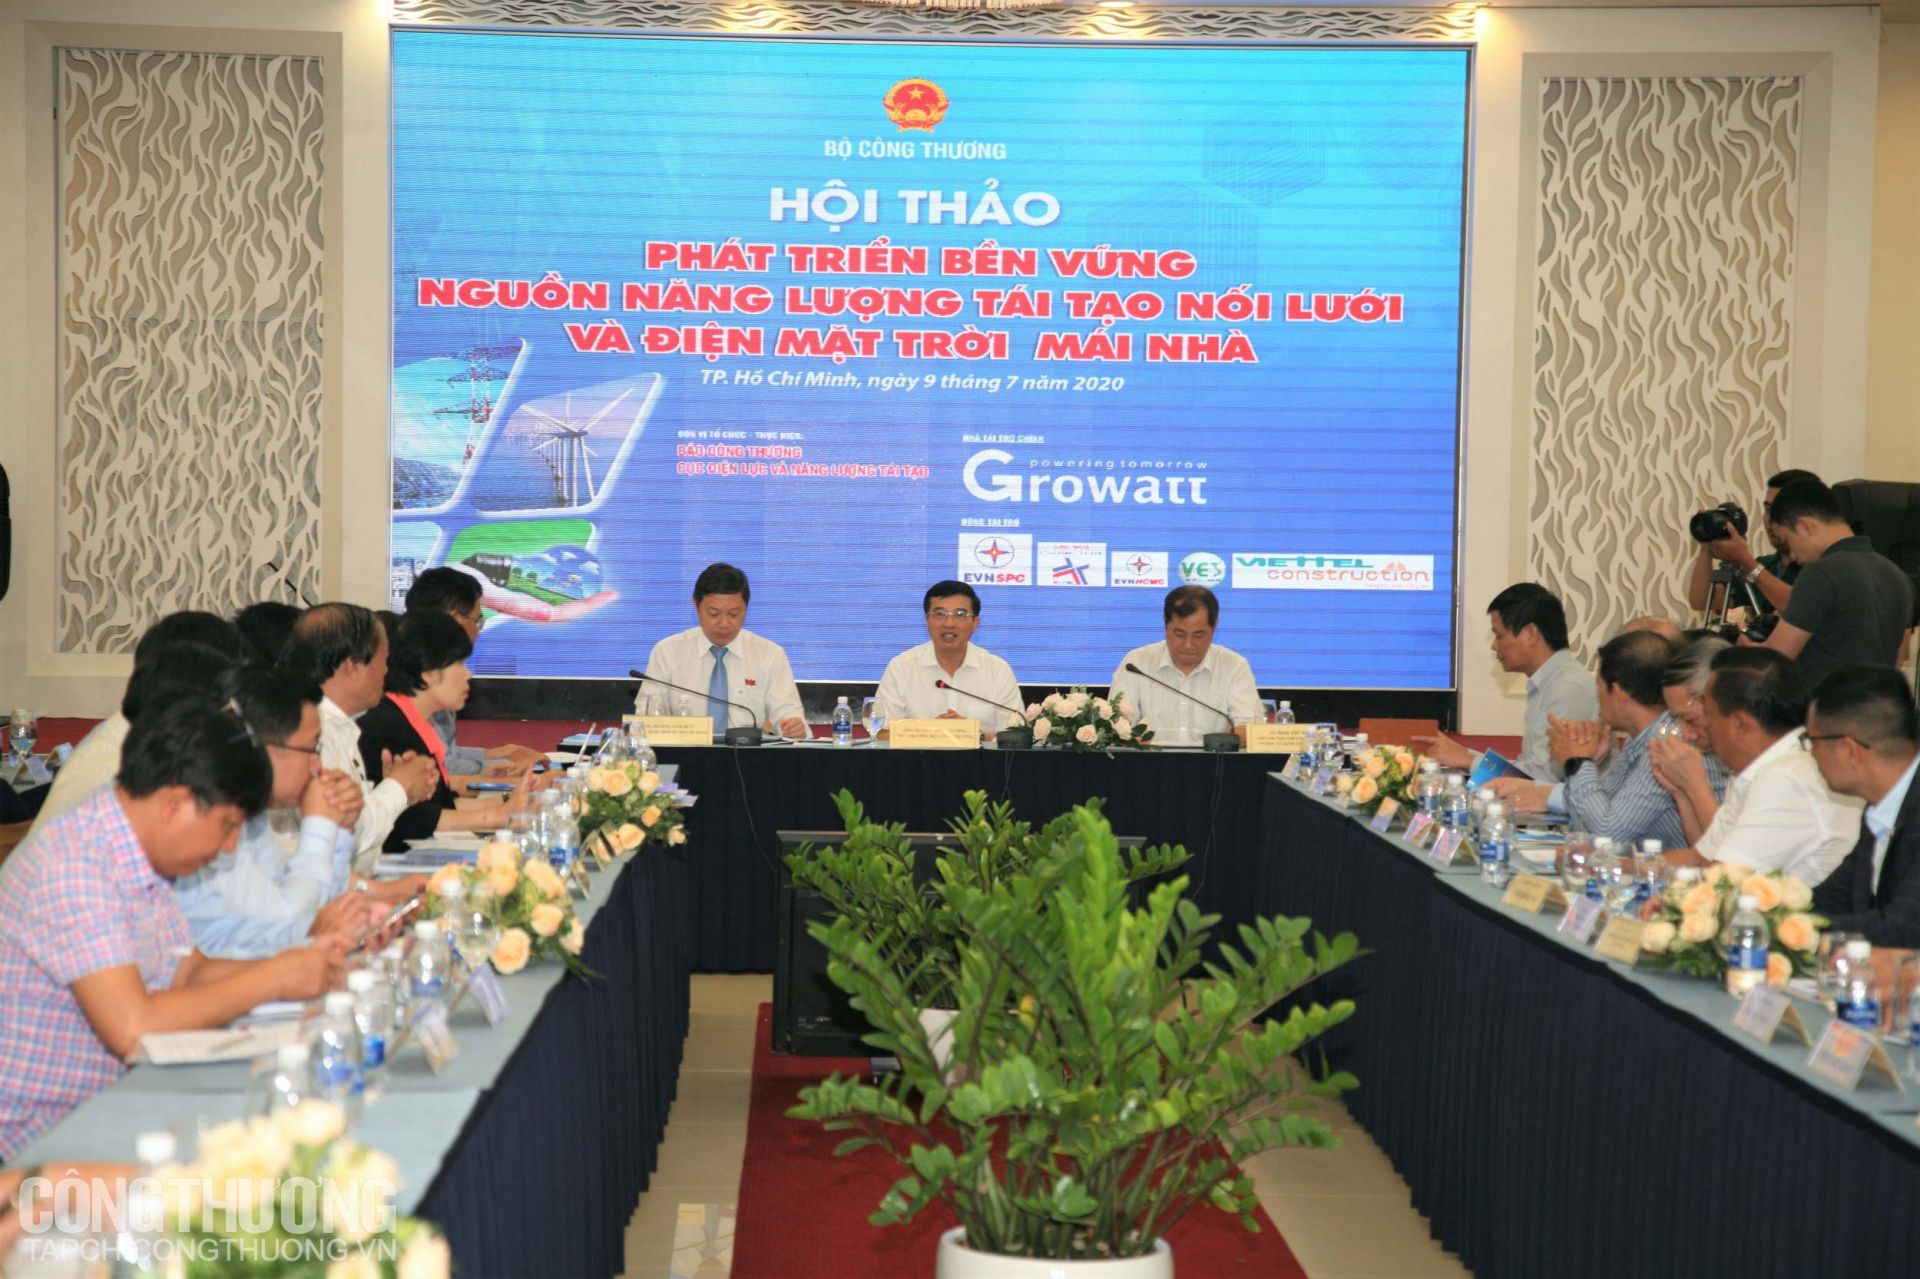 Hội thảo Phát triển bền vững nguồn năng lượng tái tạo nối lưới và điện mặt trời mái nhà